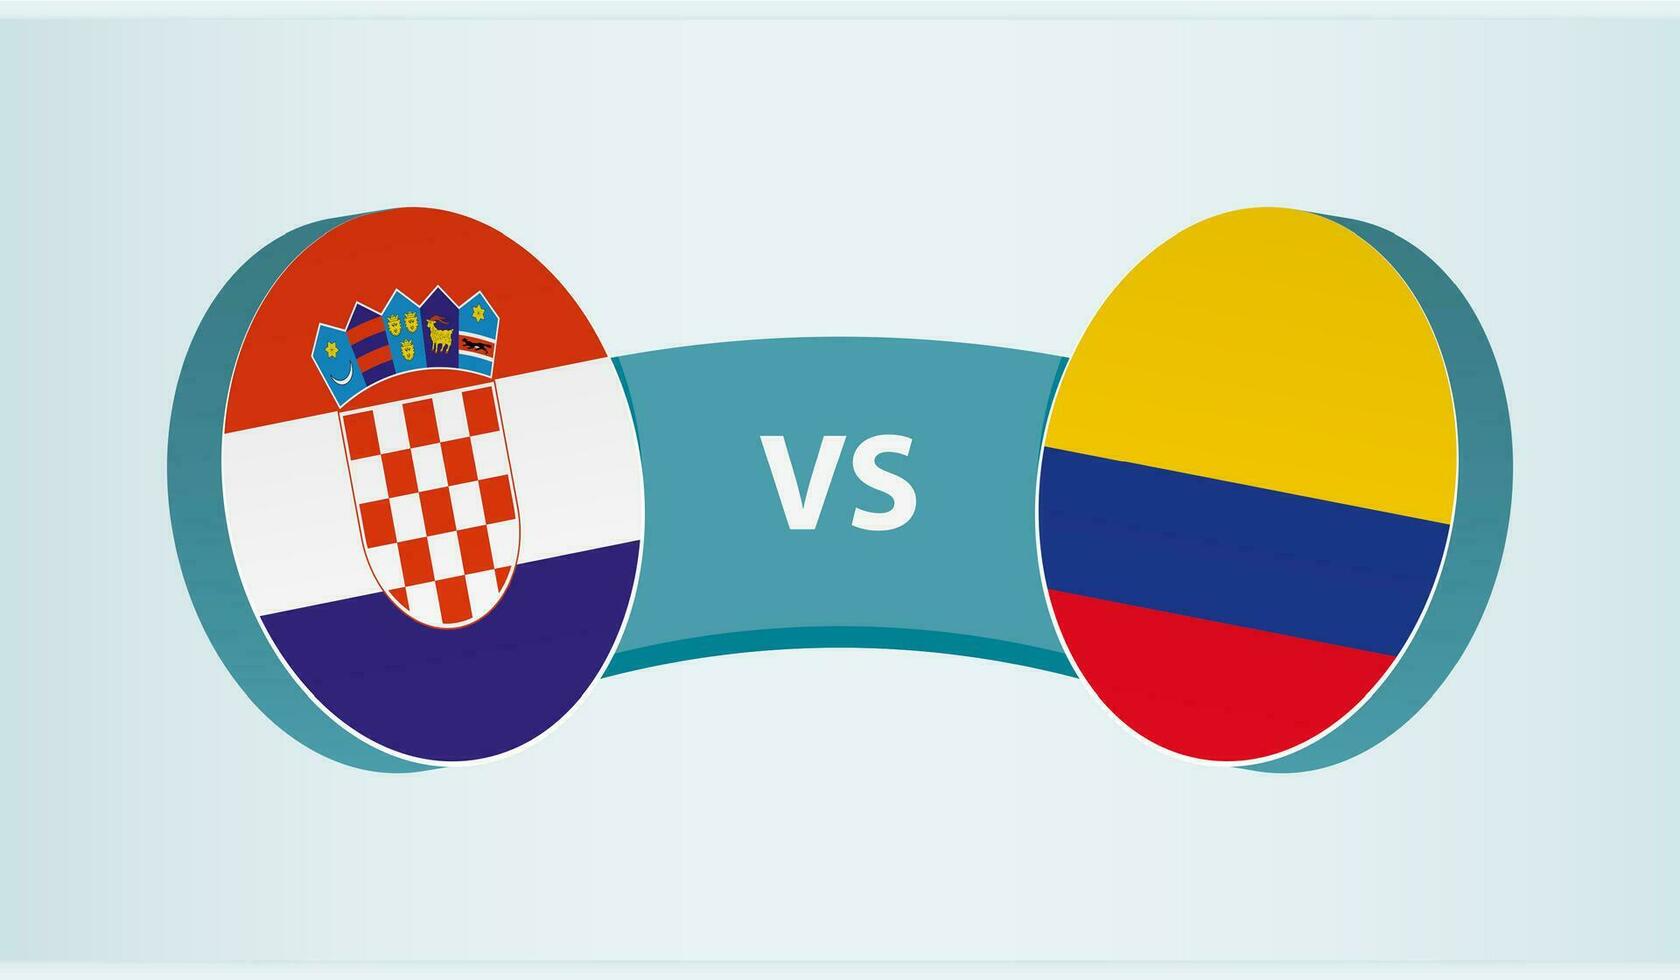 Croácia versus Colômbia, equipe Esportes concorrência conceito. vetor